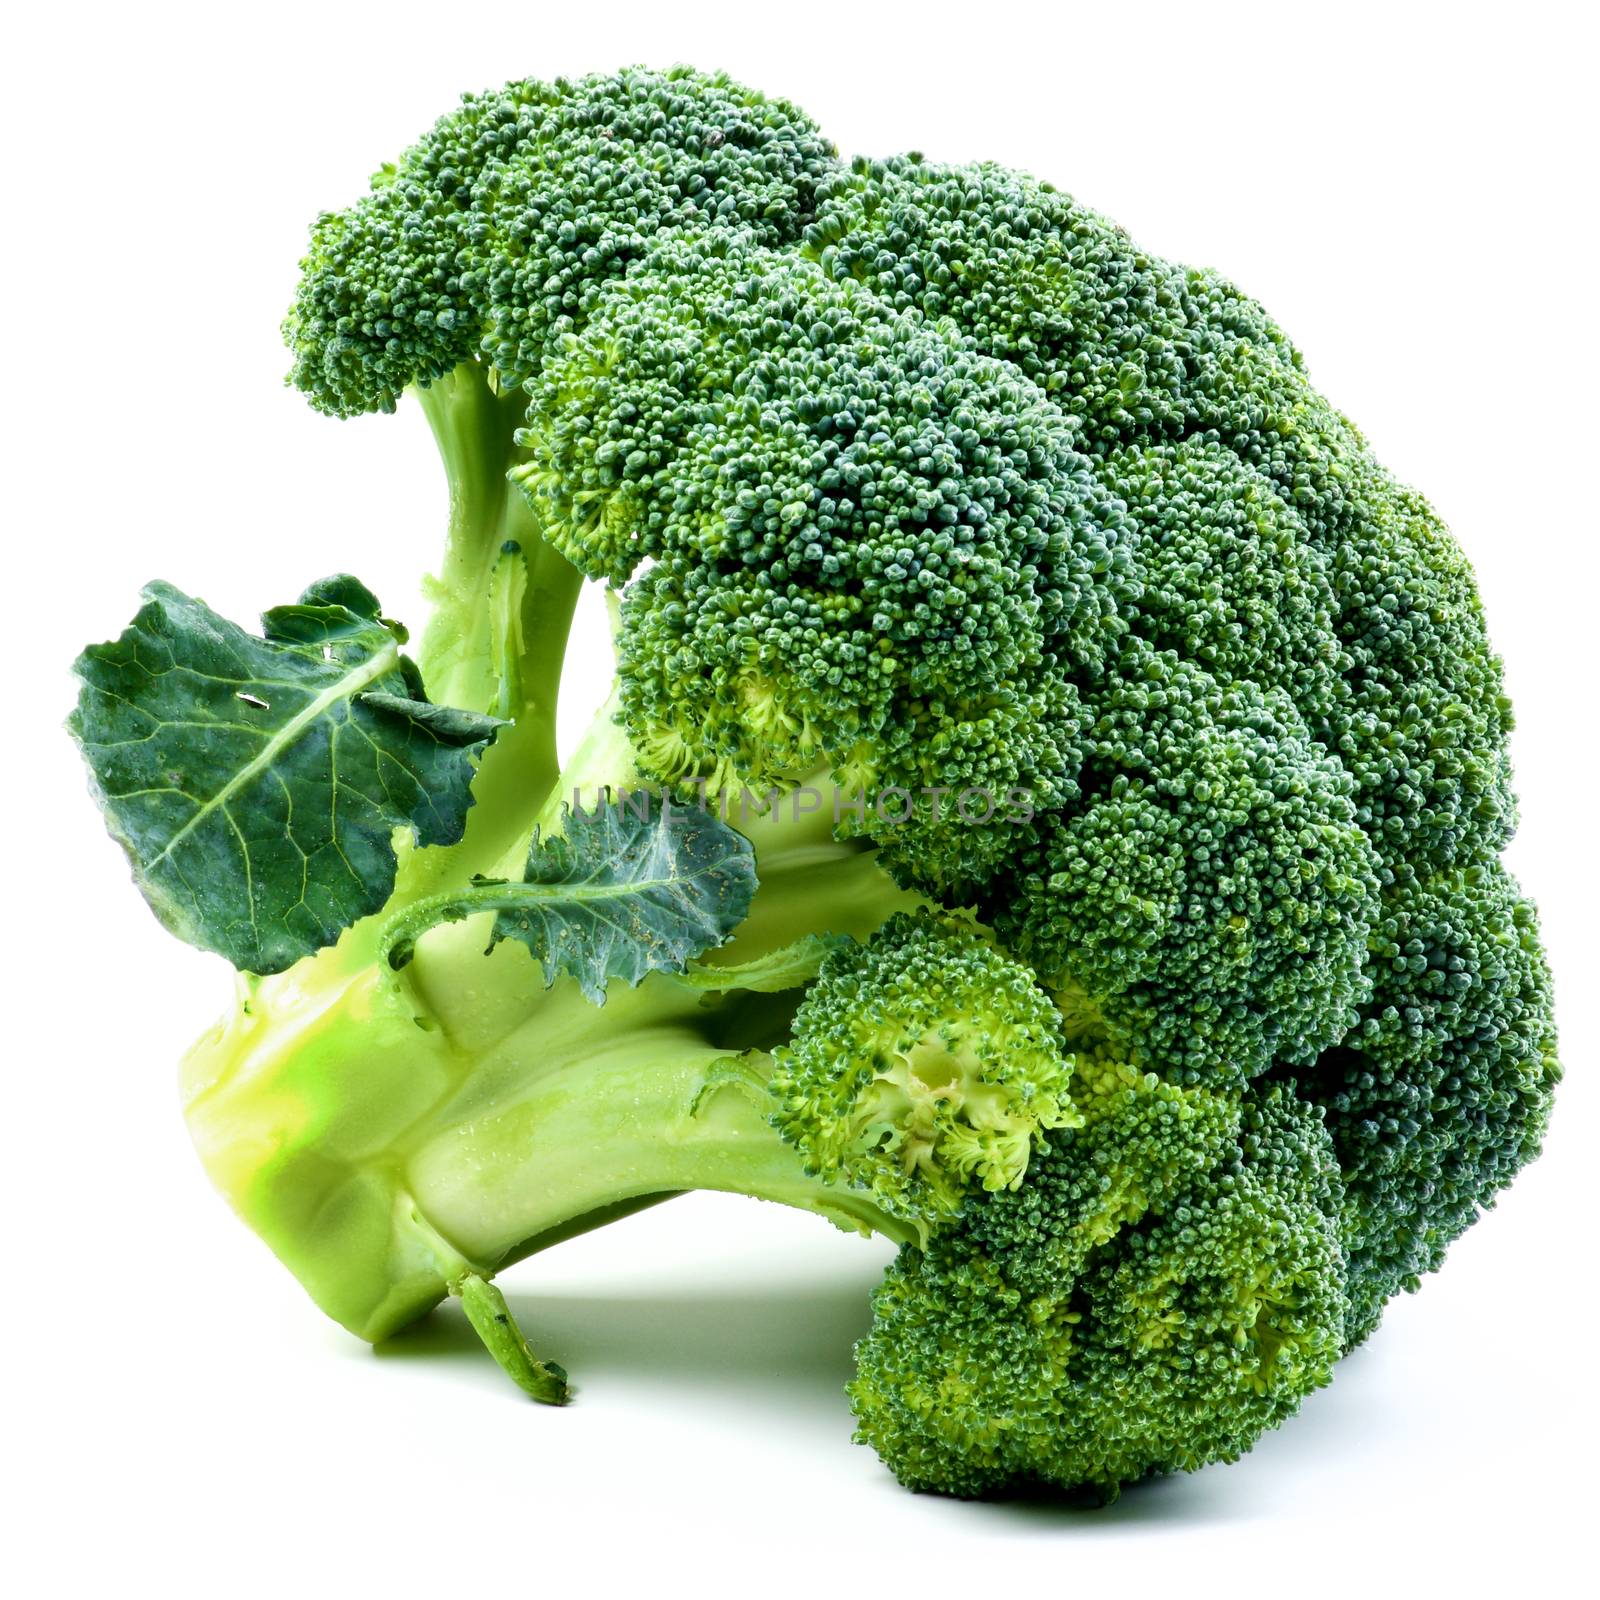 One Raw Broccoli by zhekos